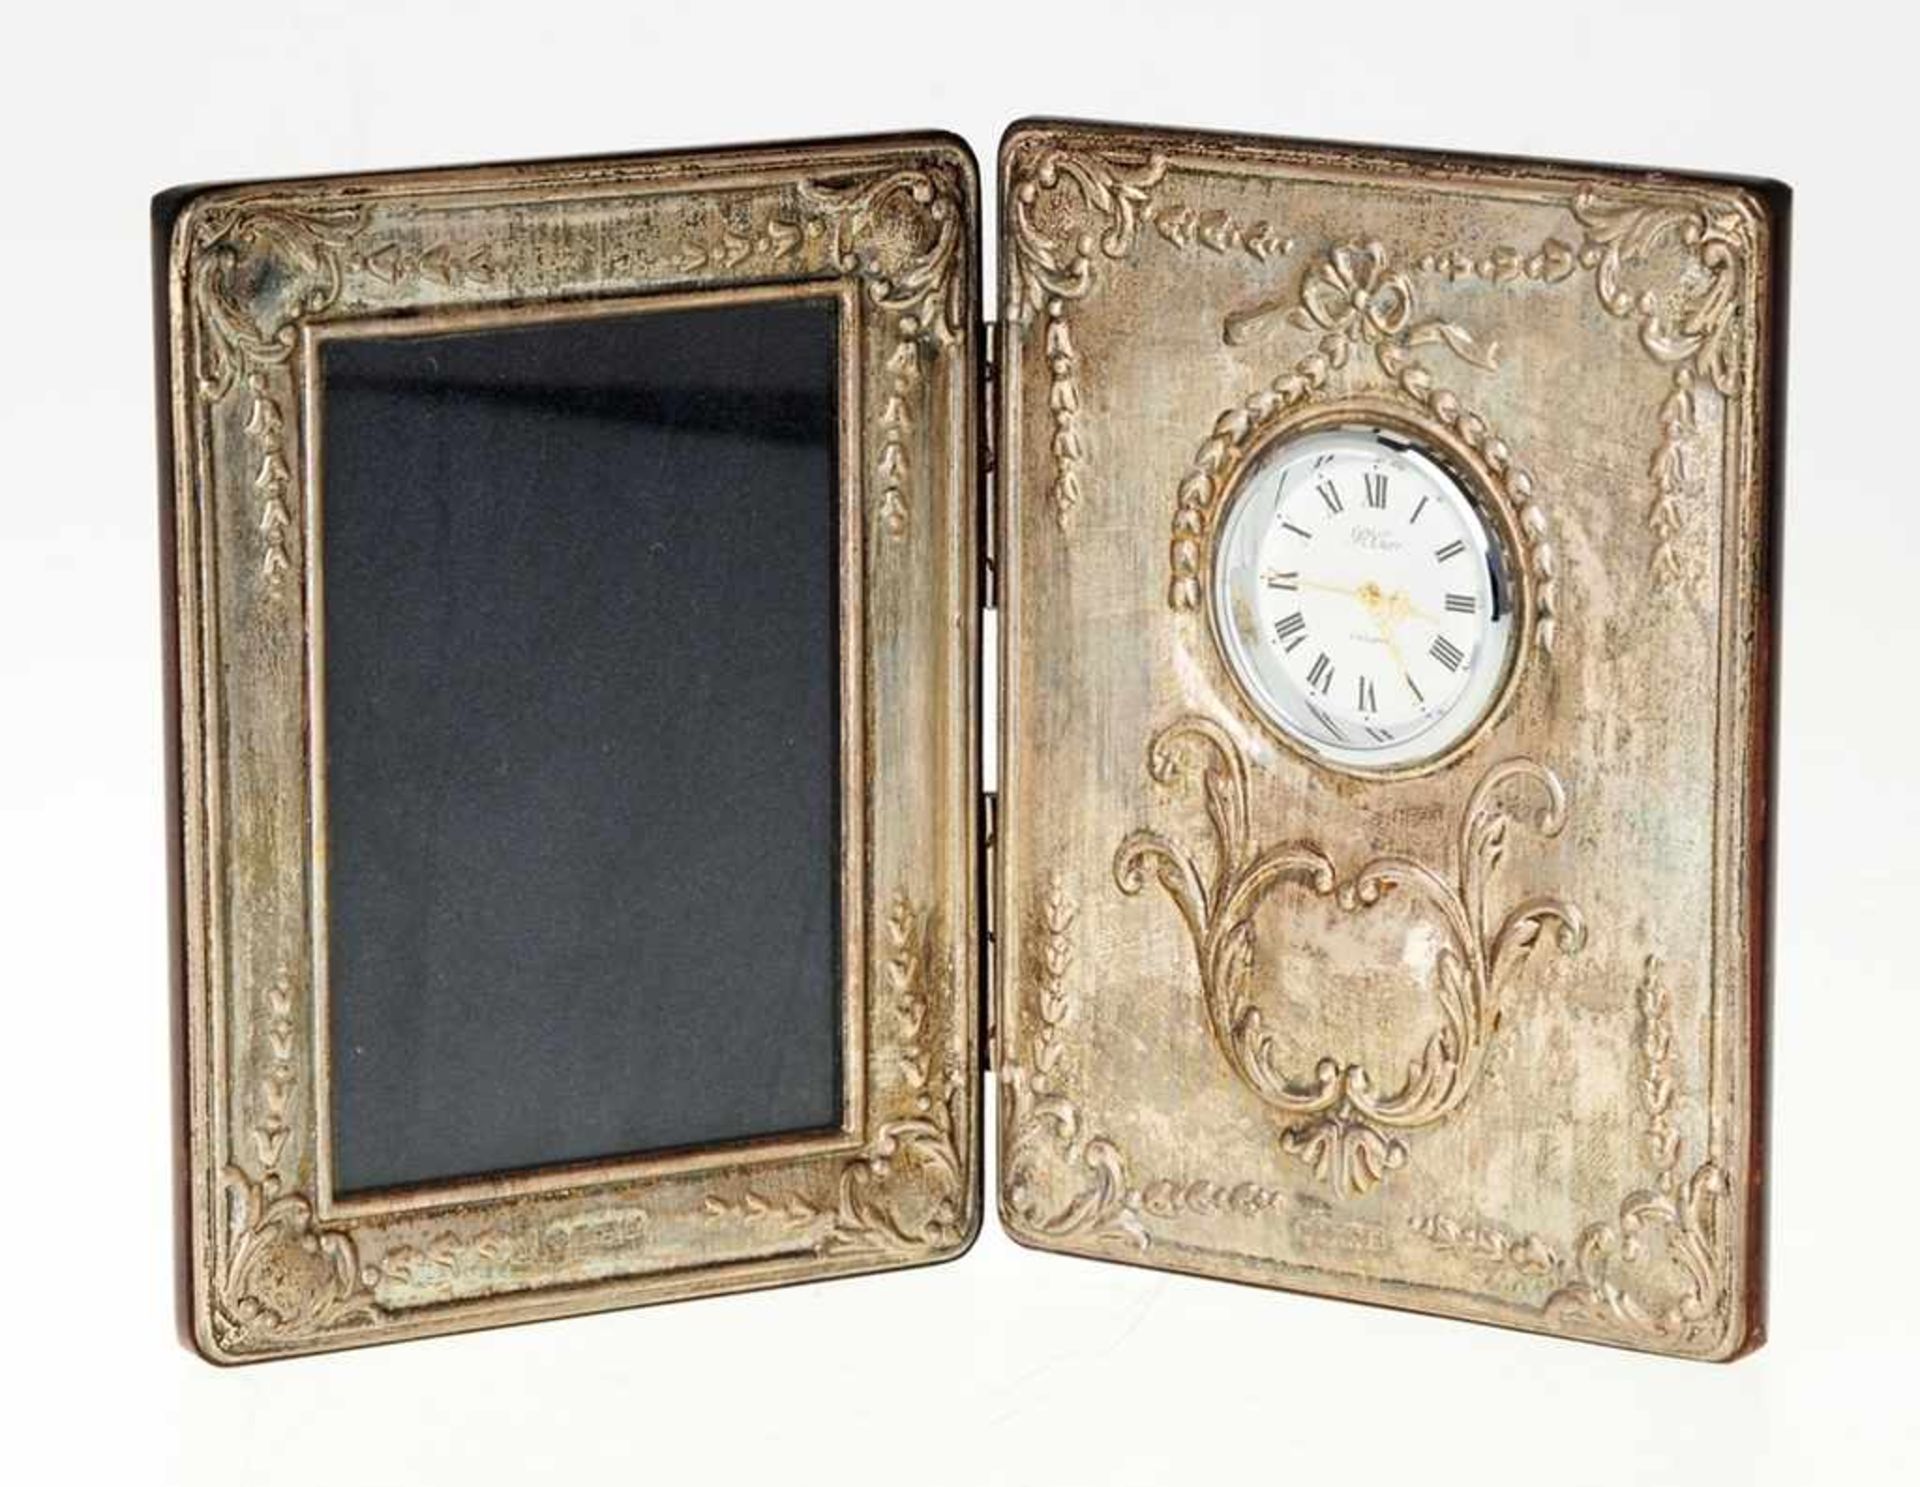 Tischrahmen mit UhrScharnierte Holzflügel mit Photorahmen u. Uhr, schaus. mit floral reliefiertem